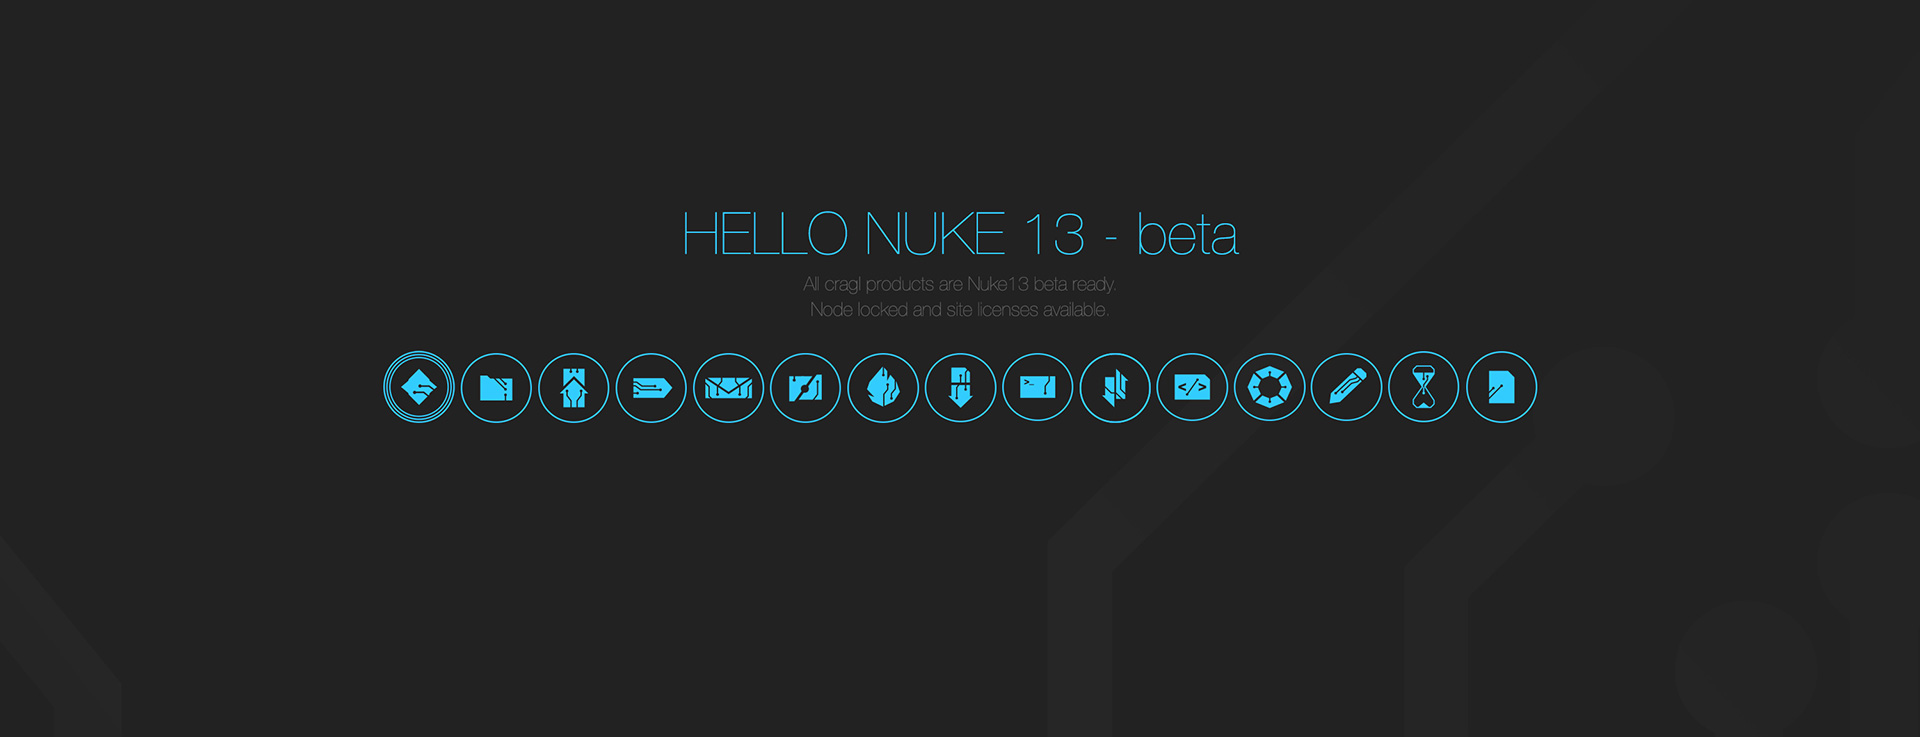 Hello Nuke-13 beta